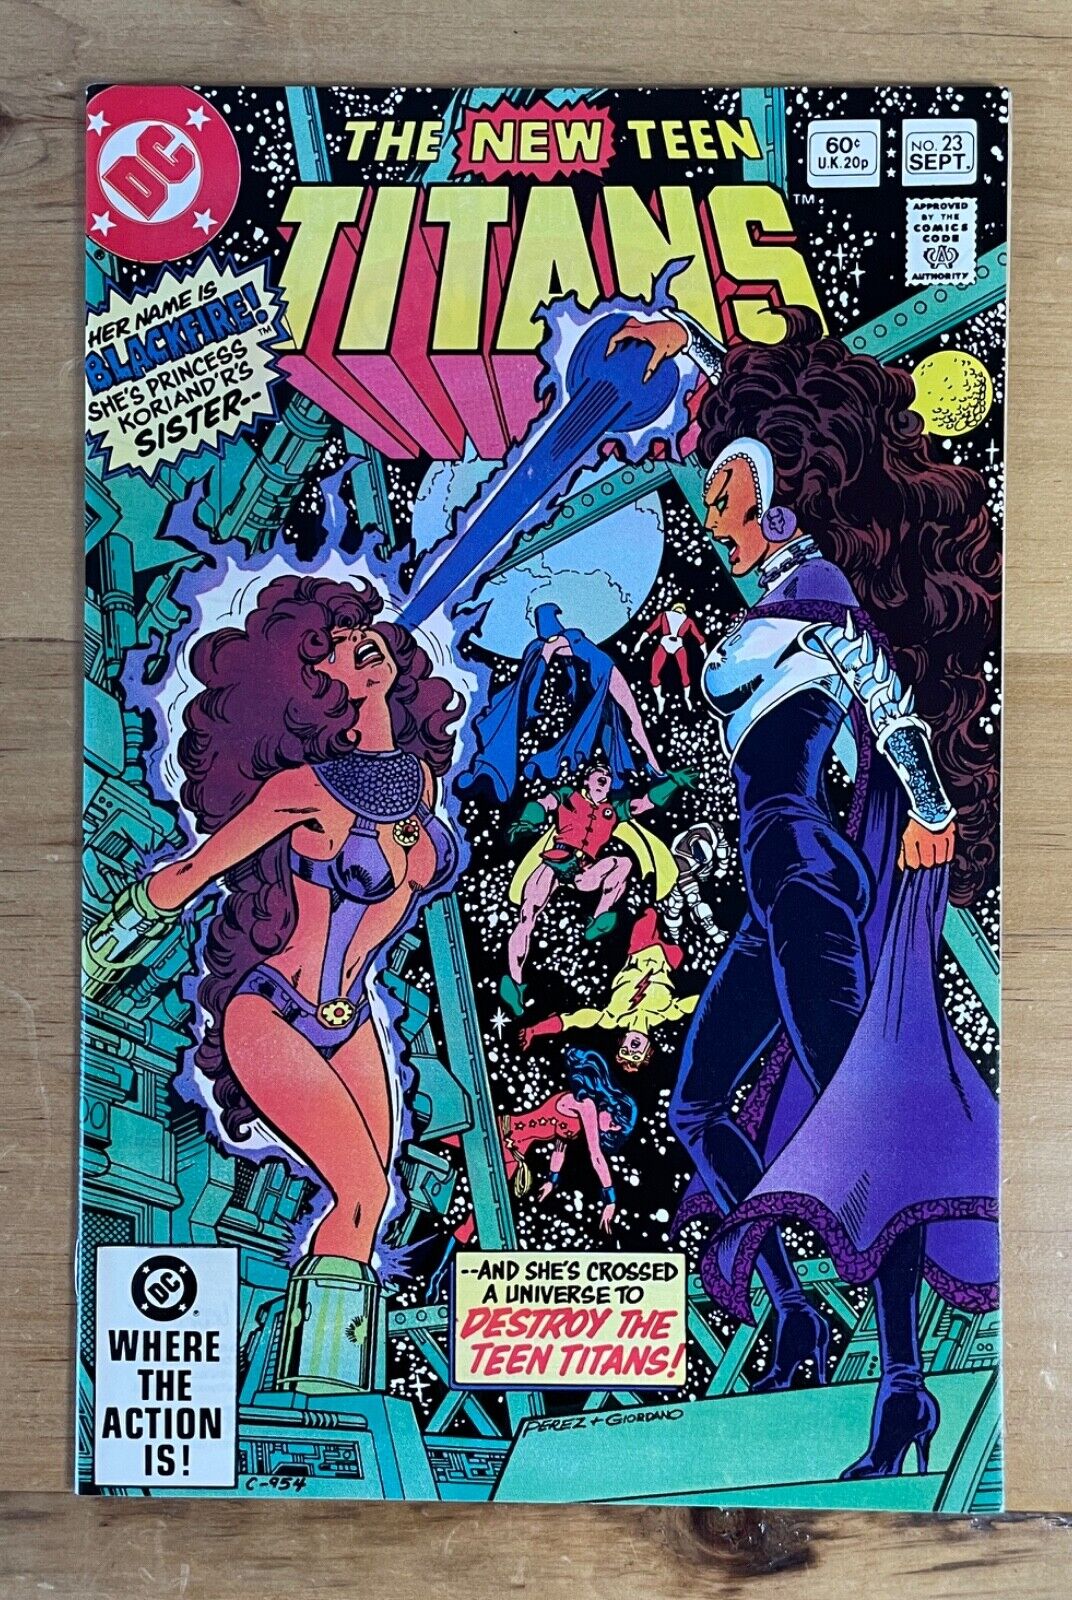 THE NEW TEEN TITANS #23 ~ DC COMICS 1982 ~ NM